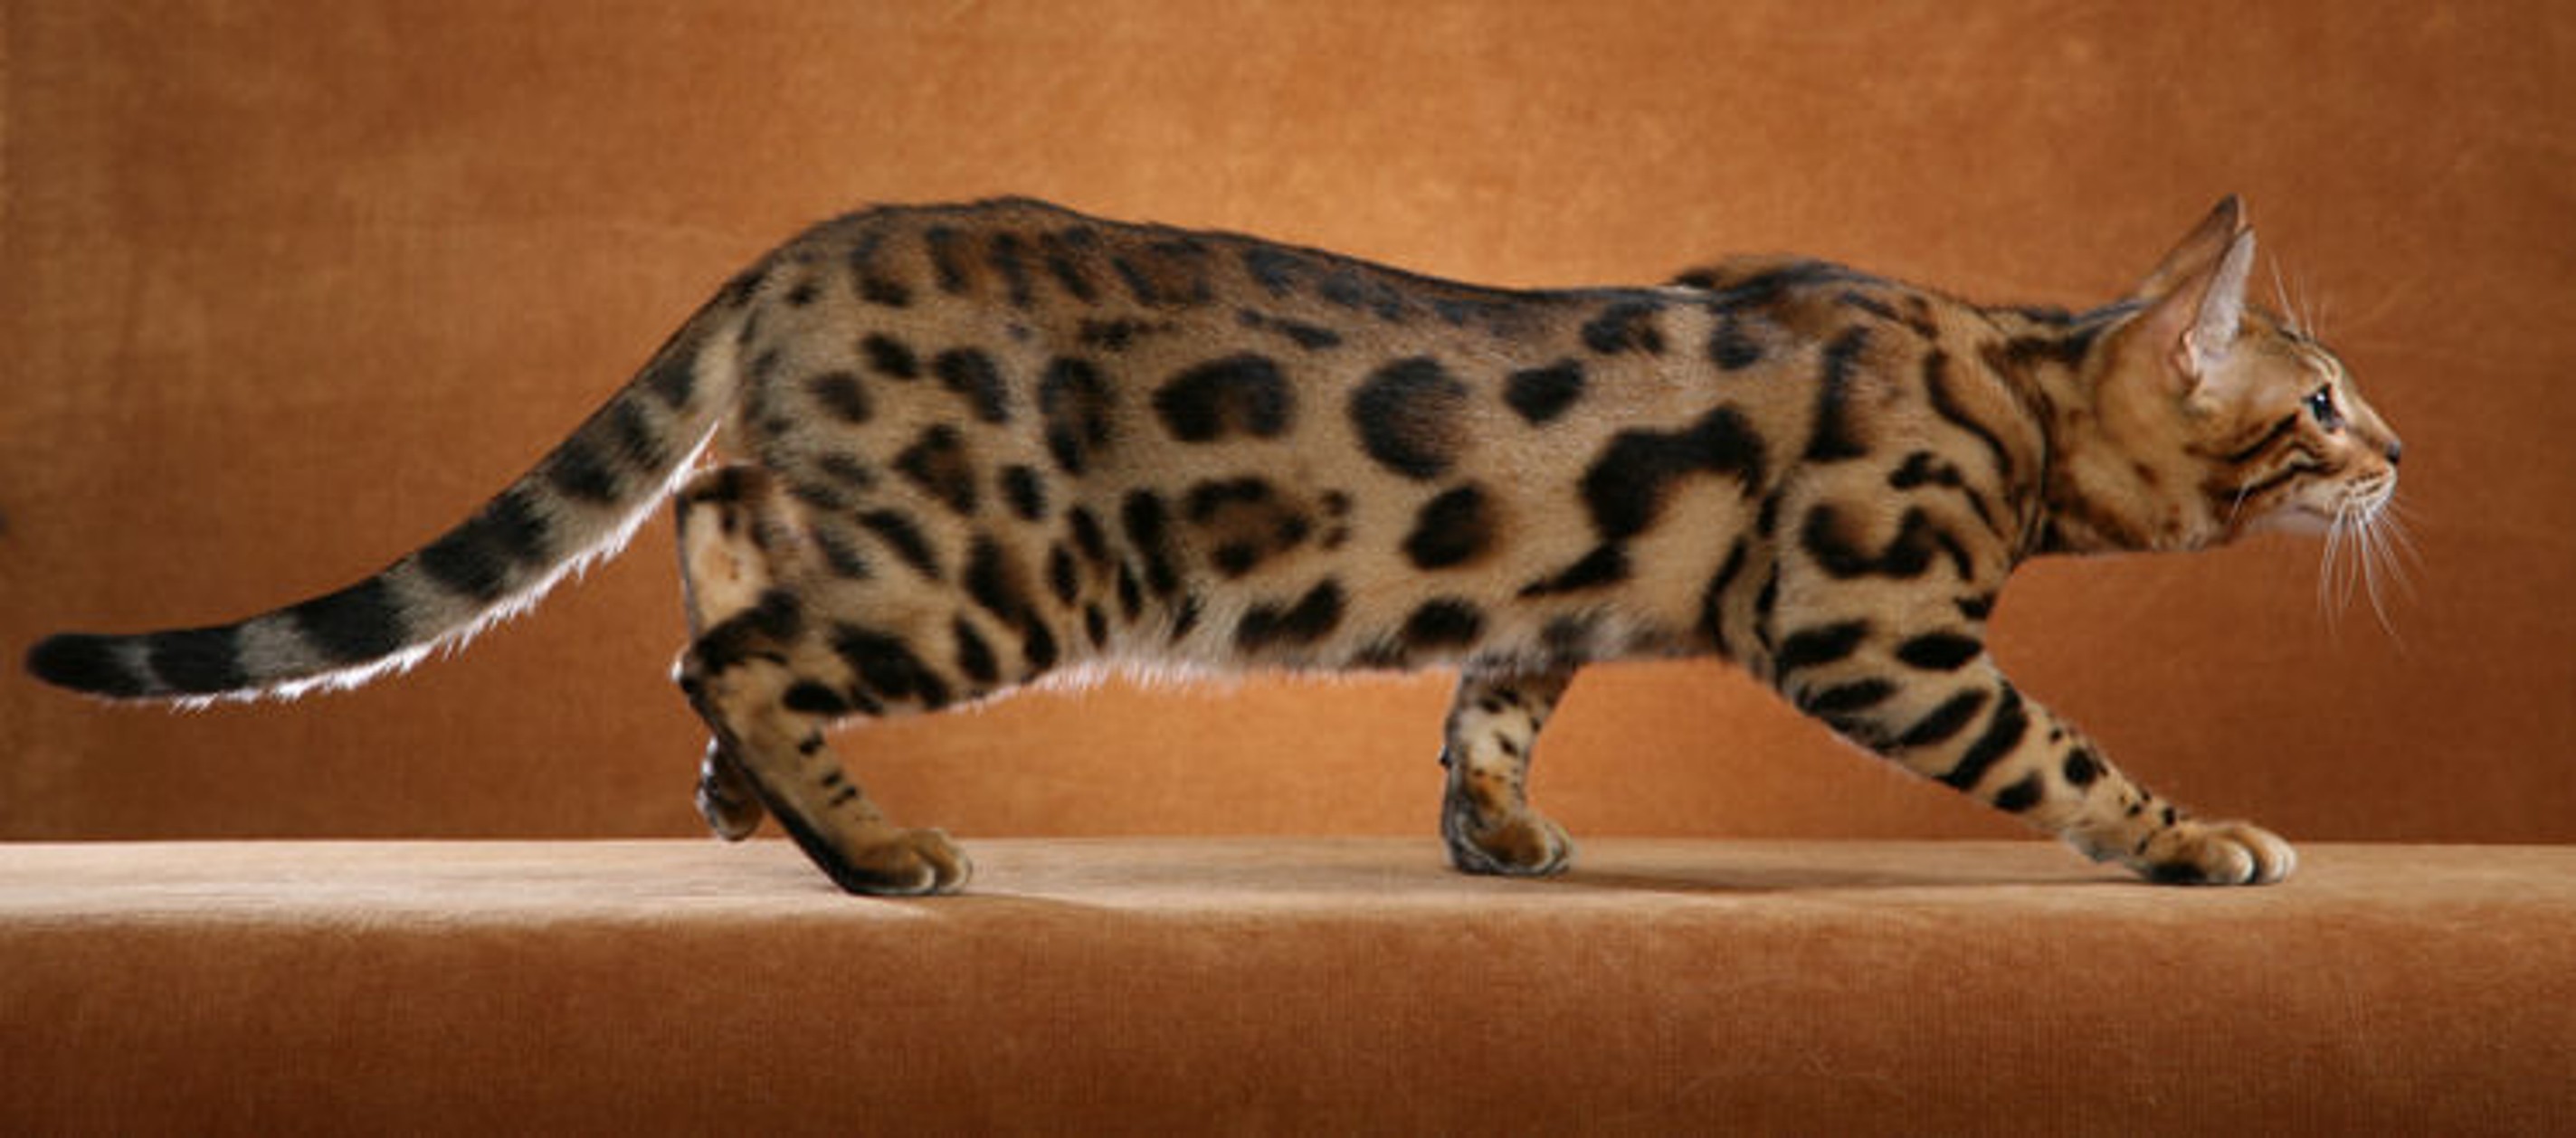 O Ocicat se parece muito com um felino selvagem!